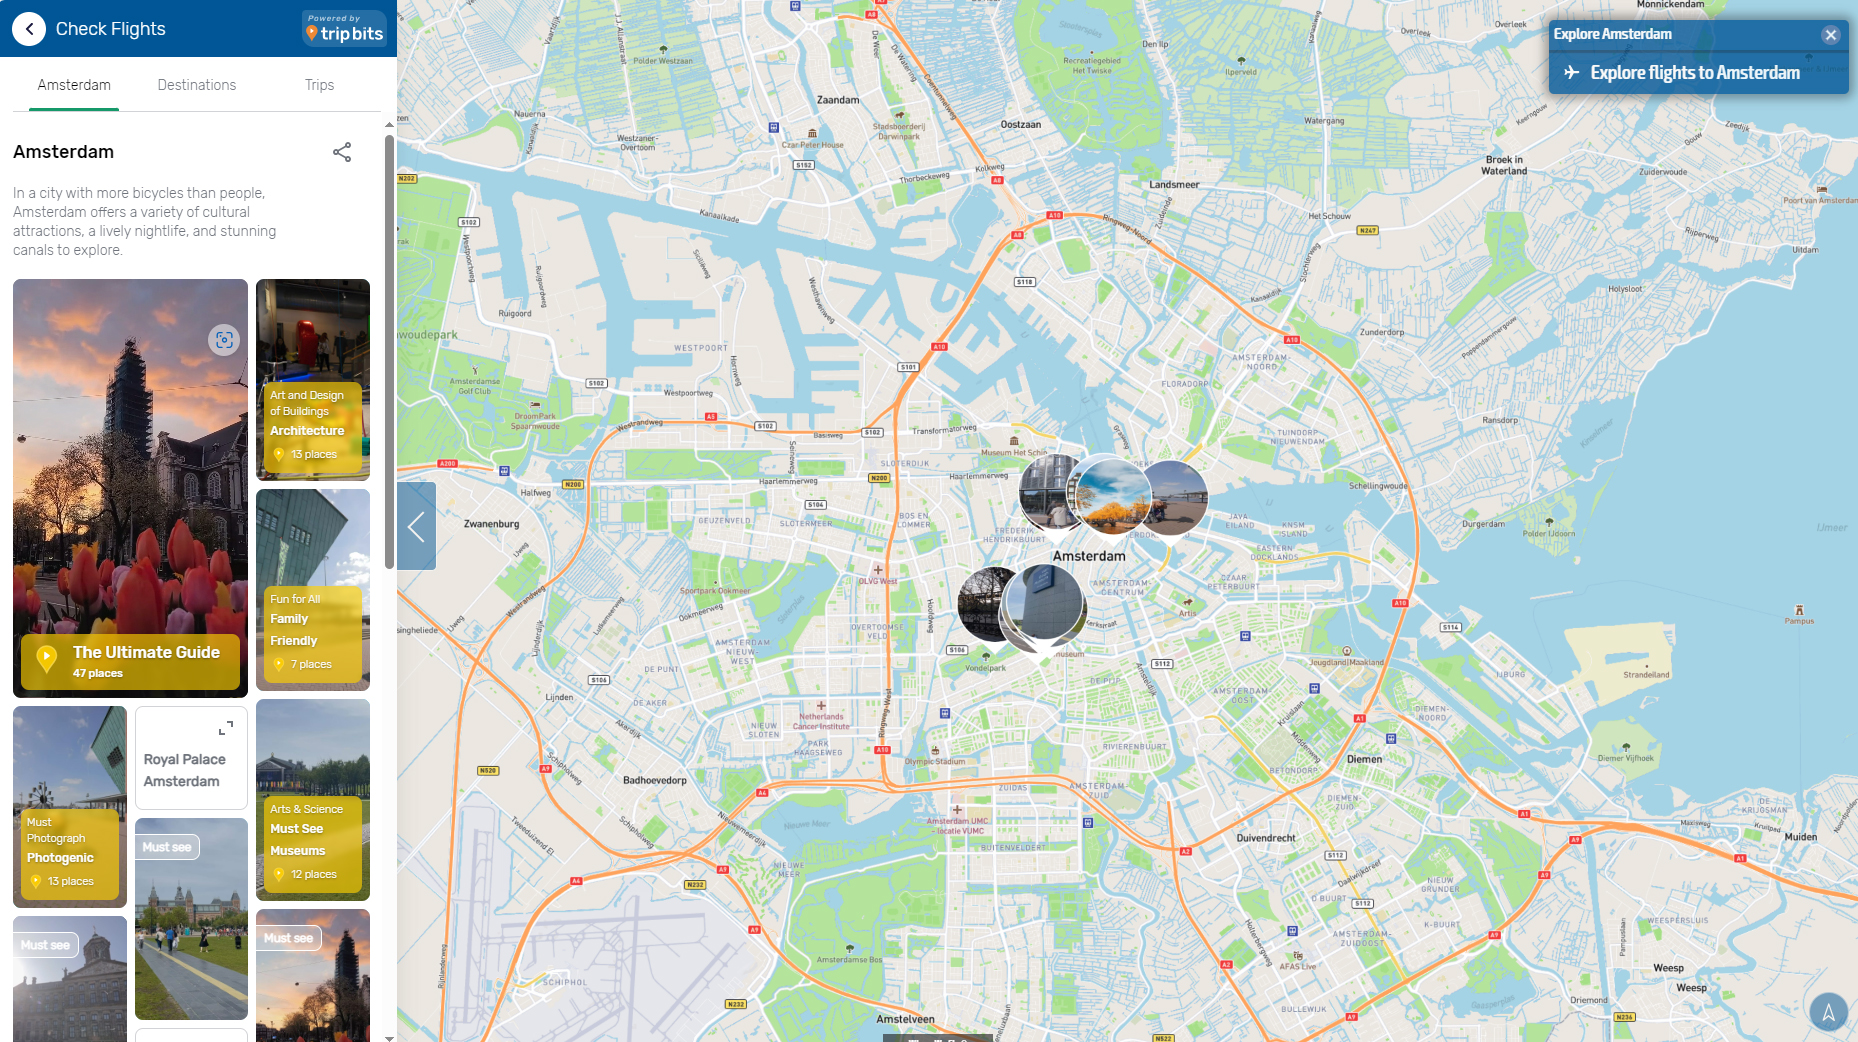 MIA Destinations Route Map Detail